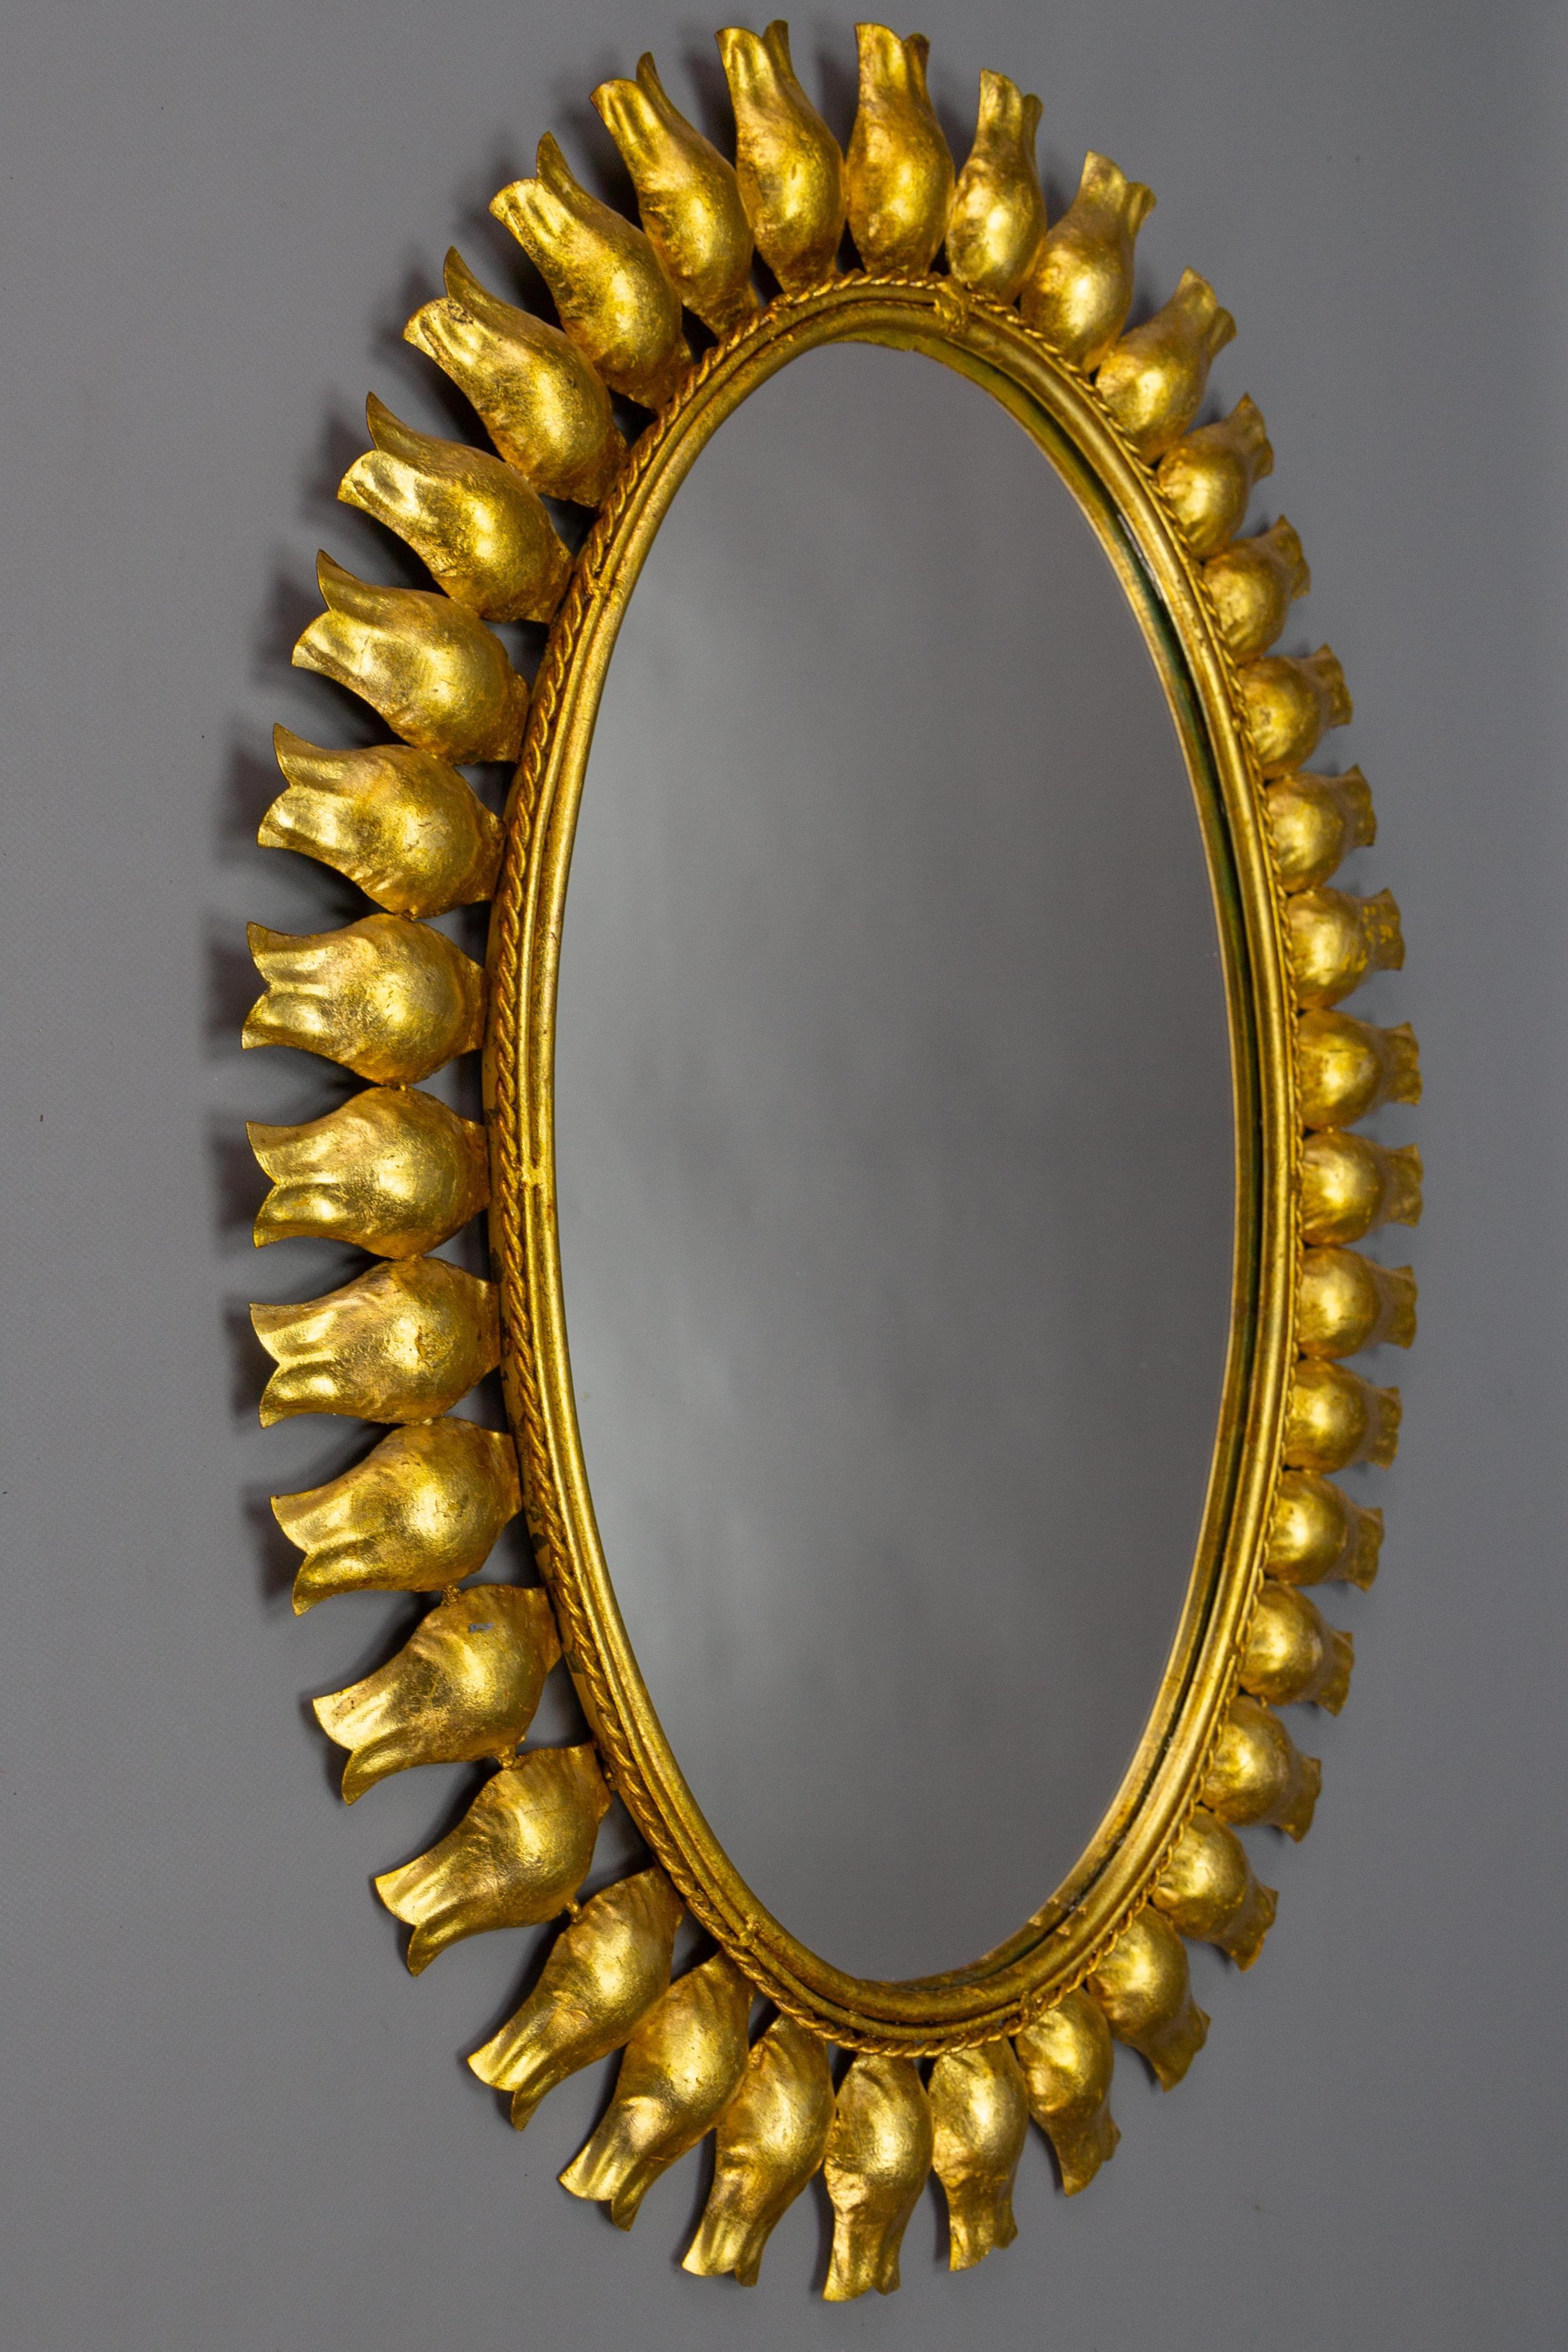 Sonnenschliffspiegel aus vergoldetem Metall aus der Mitte des Jahrhunderts, Deutschland, ca. 1950.
Ein schöner ovaler Spiegel im Hollywood-Regency-Stil in Form einer Sonne oder eines Sonnenschlages mit einem vergoldeten Metallrahmen mit